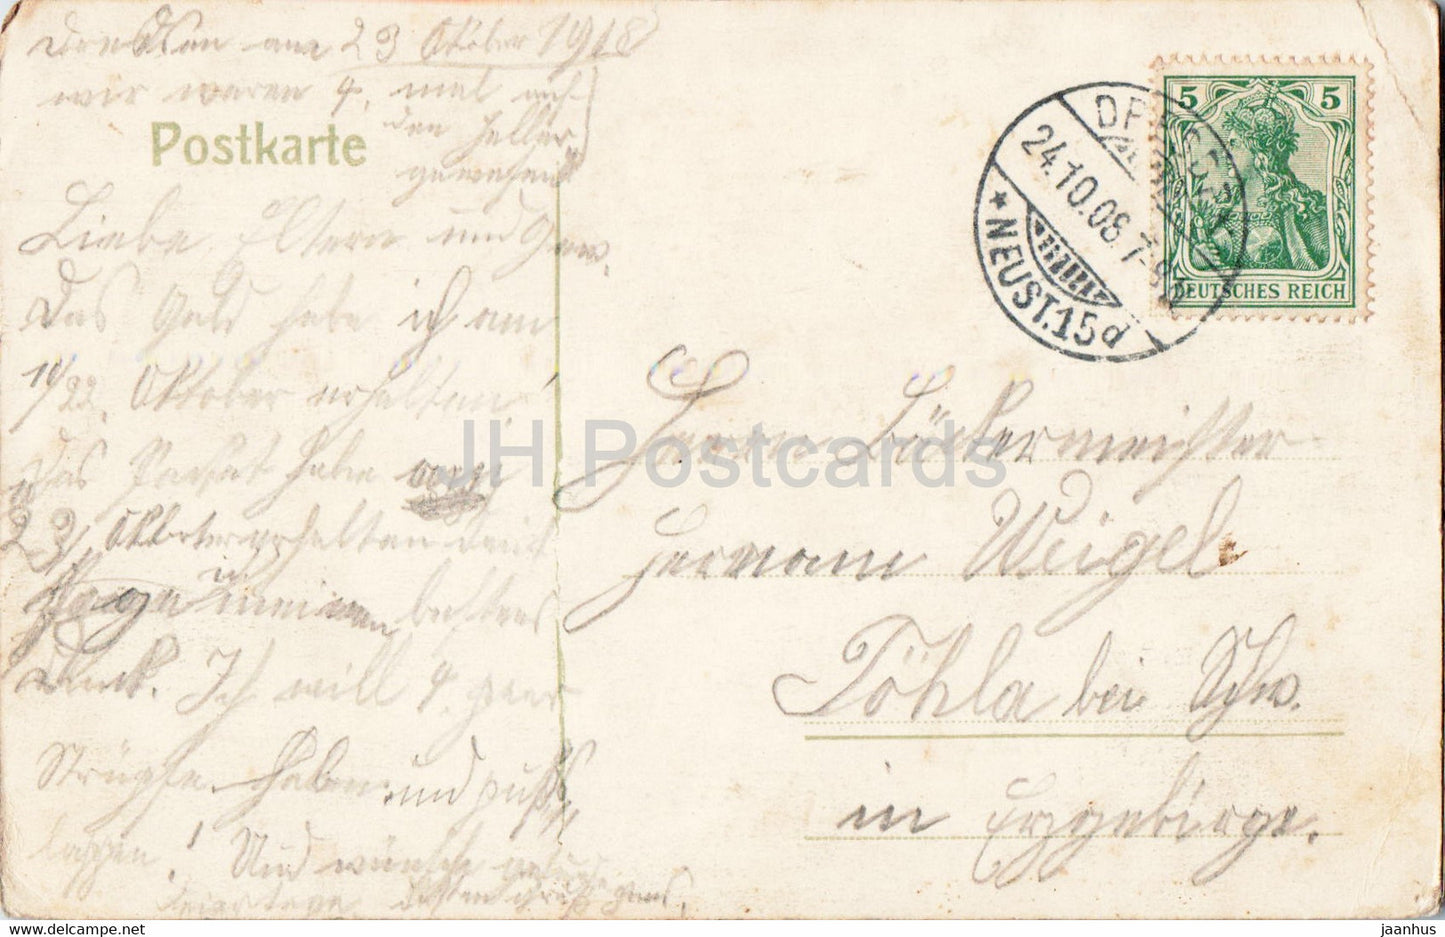 Dresden - Konigl Schloss - tram - castles - 1908 - old postcard - Germany - used